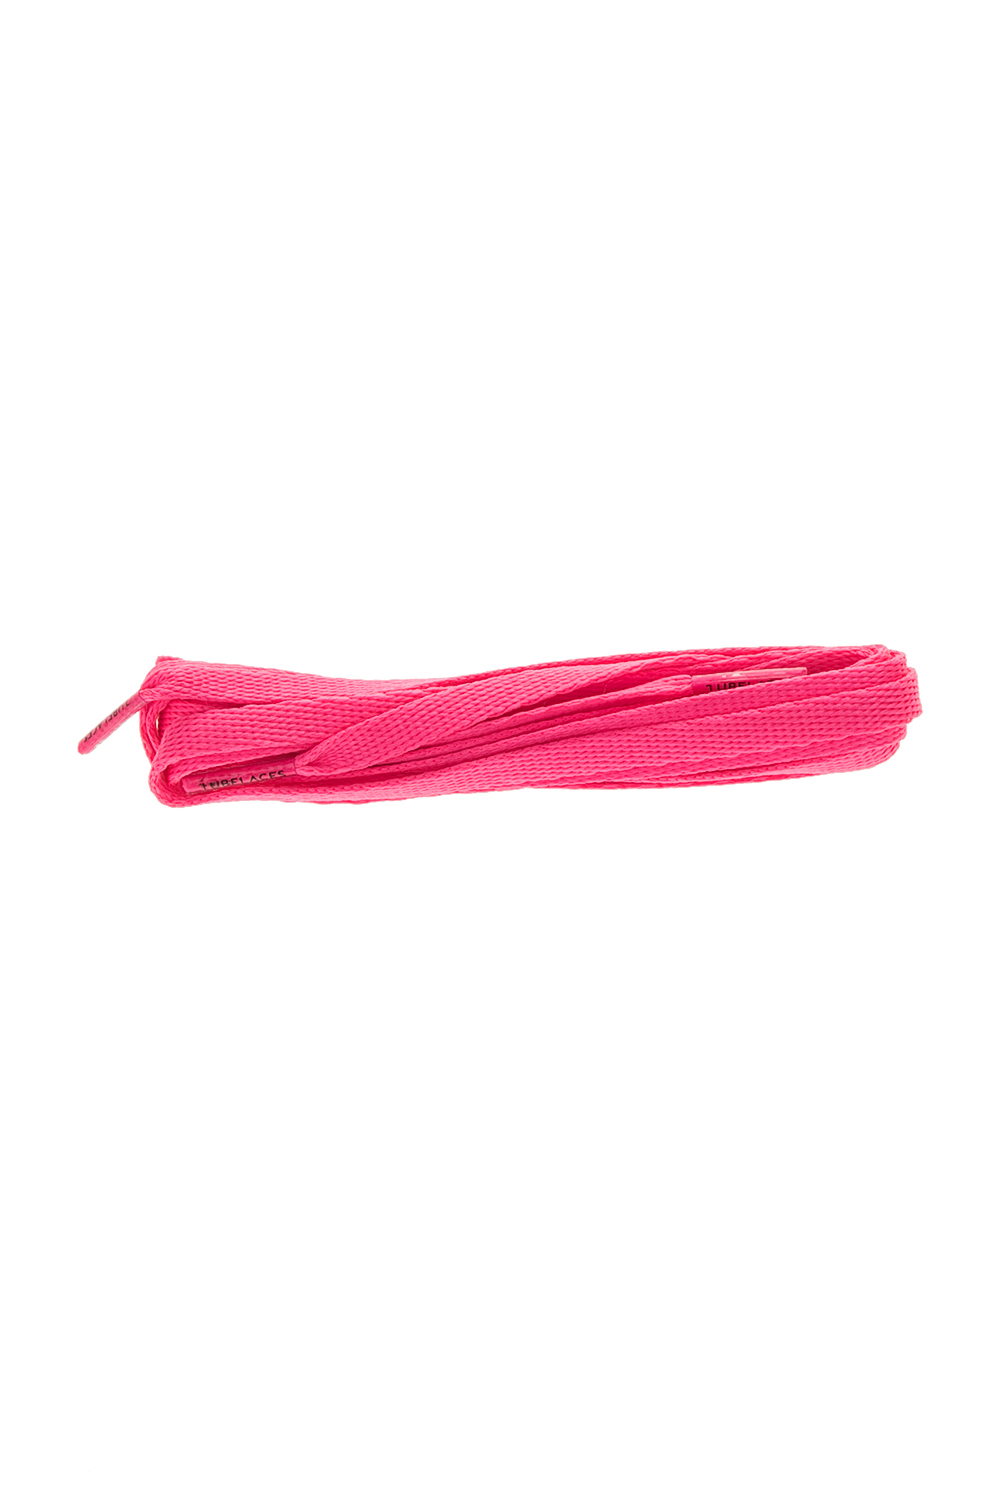 Γυναικεία/Αξεσουάρ/Κορδόνια TUBELACES - Unisex κορδόνια TUBELACES WHITE FLAT ροζ